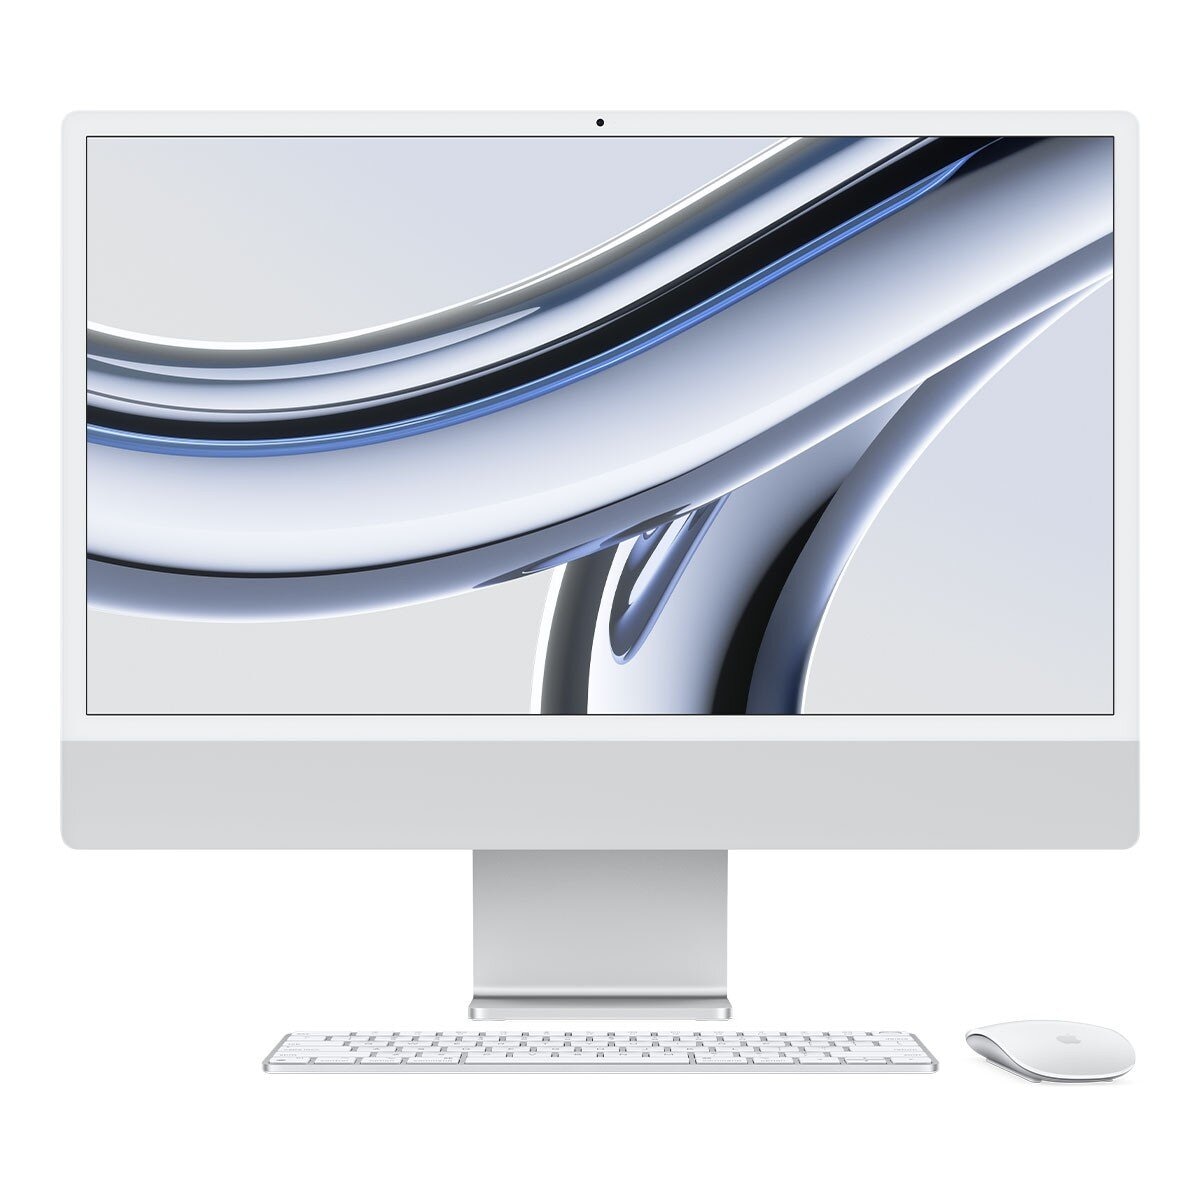 Apple iMac 24吋 搭配 M3 晶片 8 核心 CPU 8 核心 GPU 256GB SSD 銀色